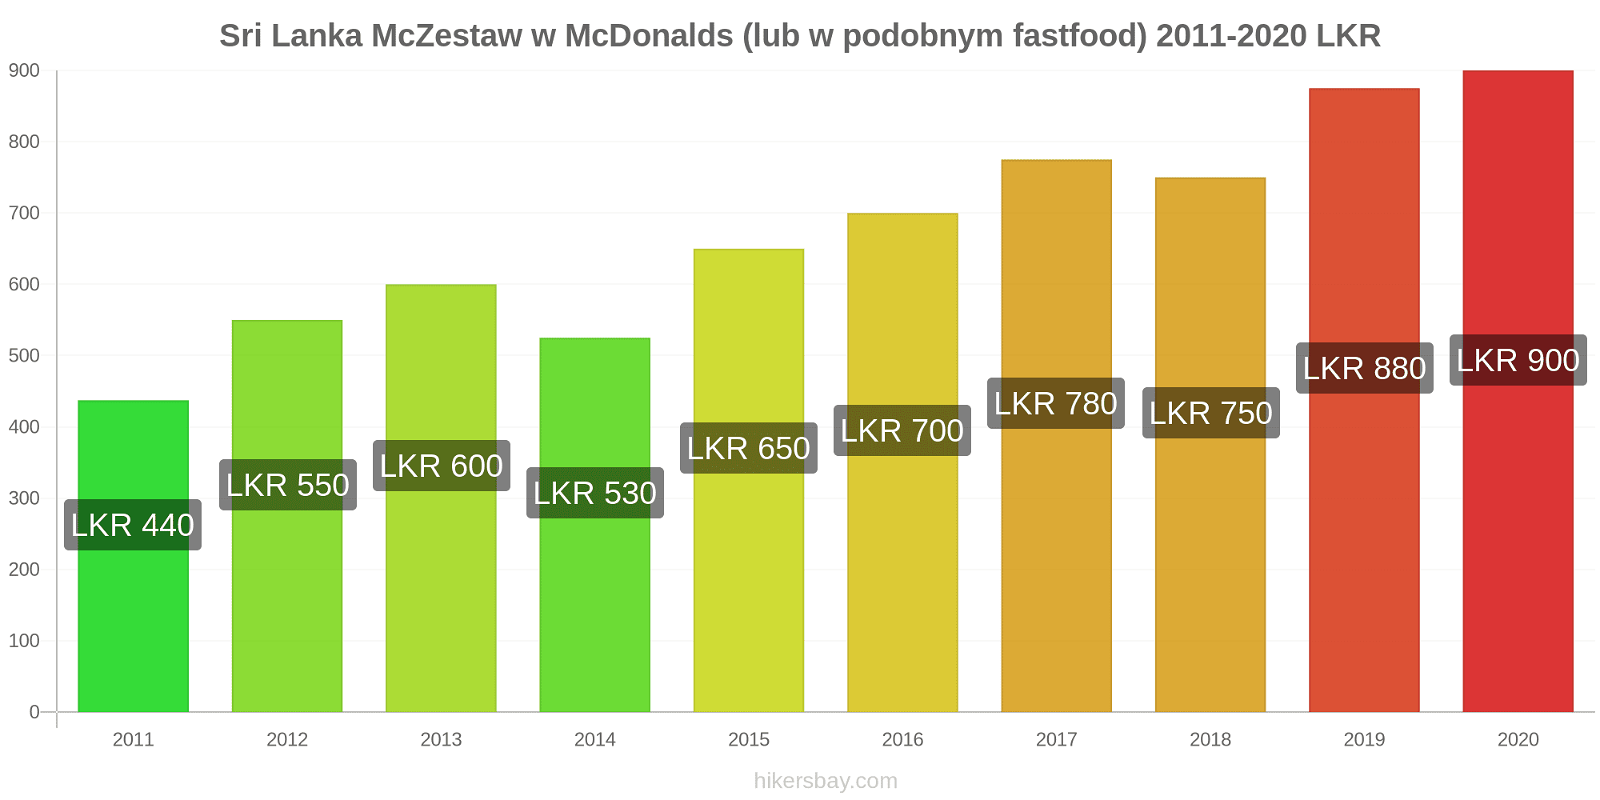 Sri Lanka zmiany cen McZestaw w McDonalds (lub w podobnym fastfood) hikersbay.com